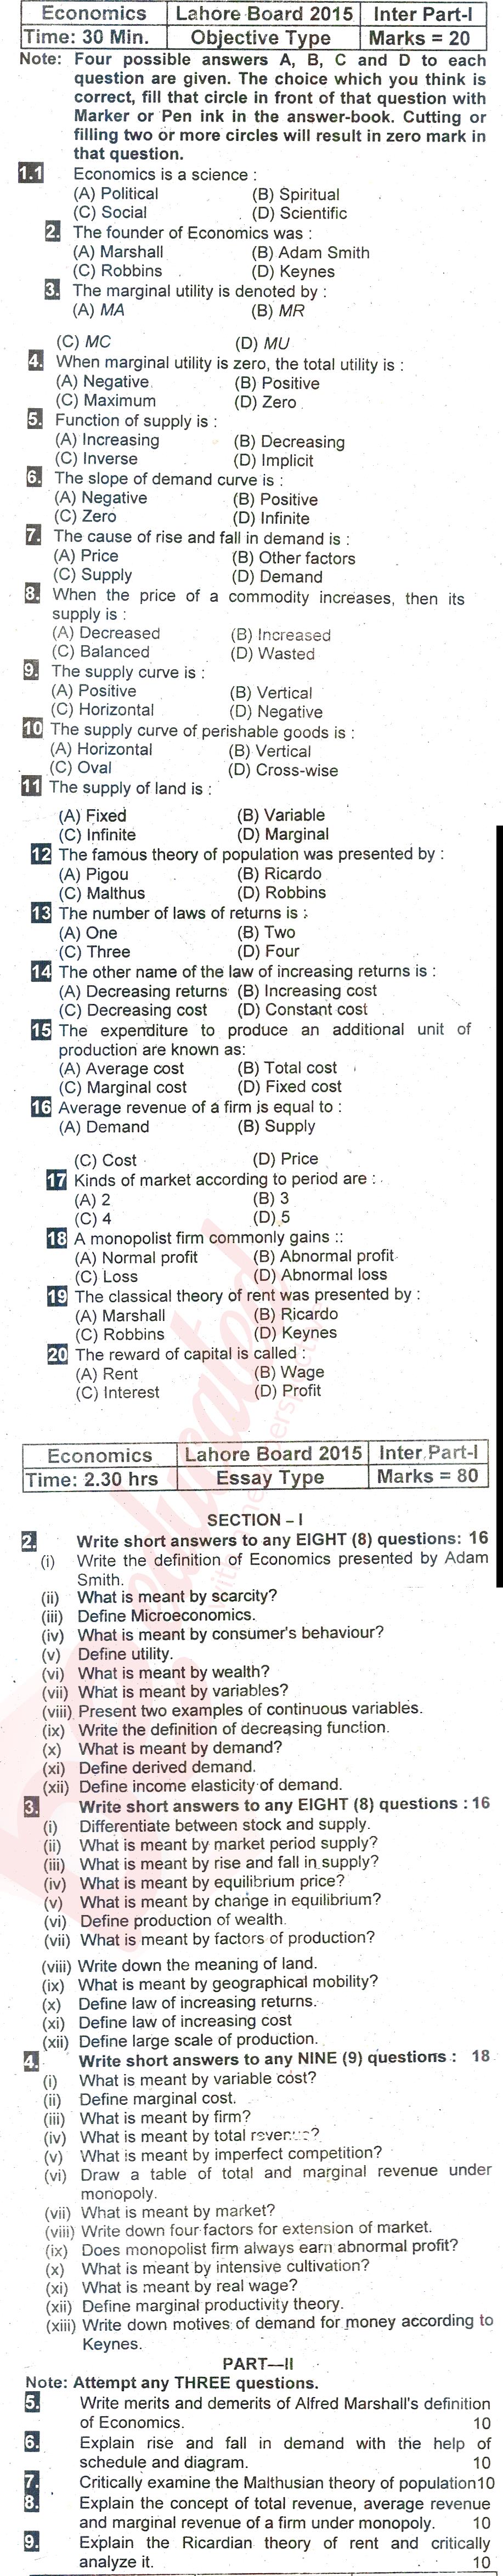 Economics FA Part 1 Past Paper Group 1 BISE Lahore 2015